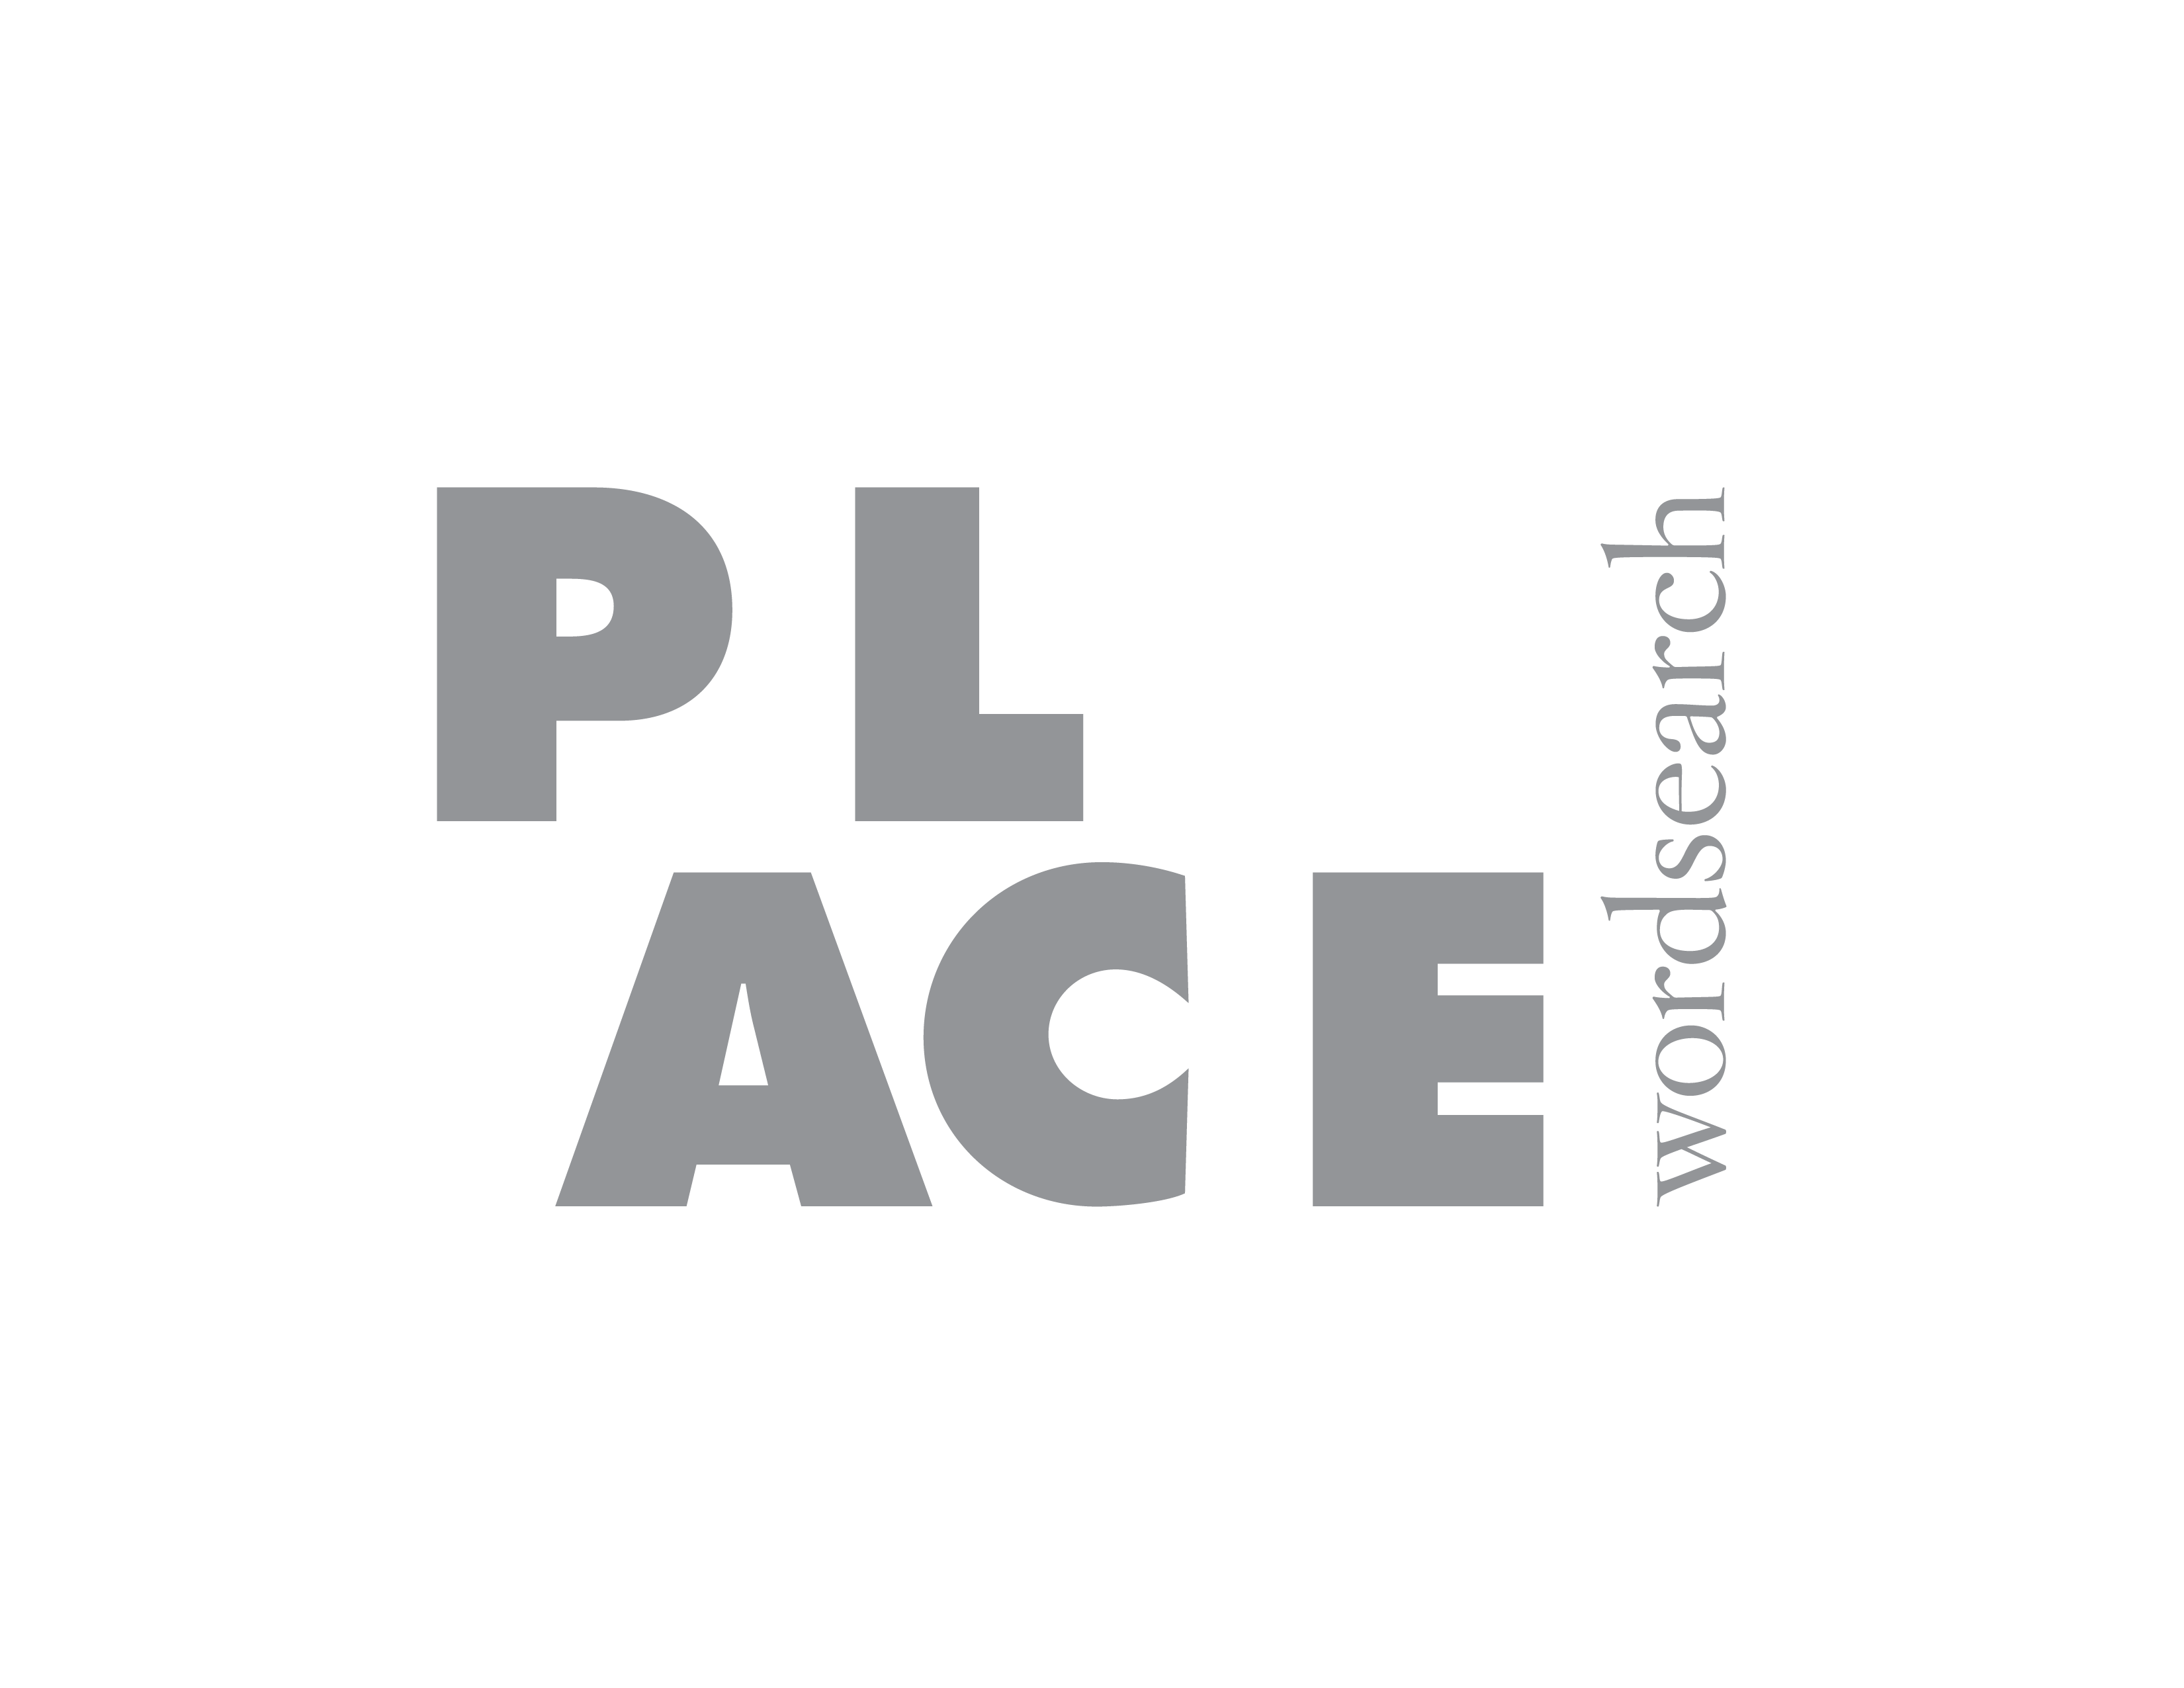 Placemaking logo